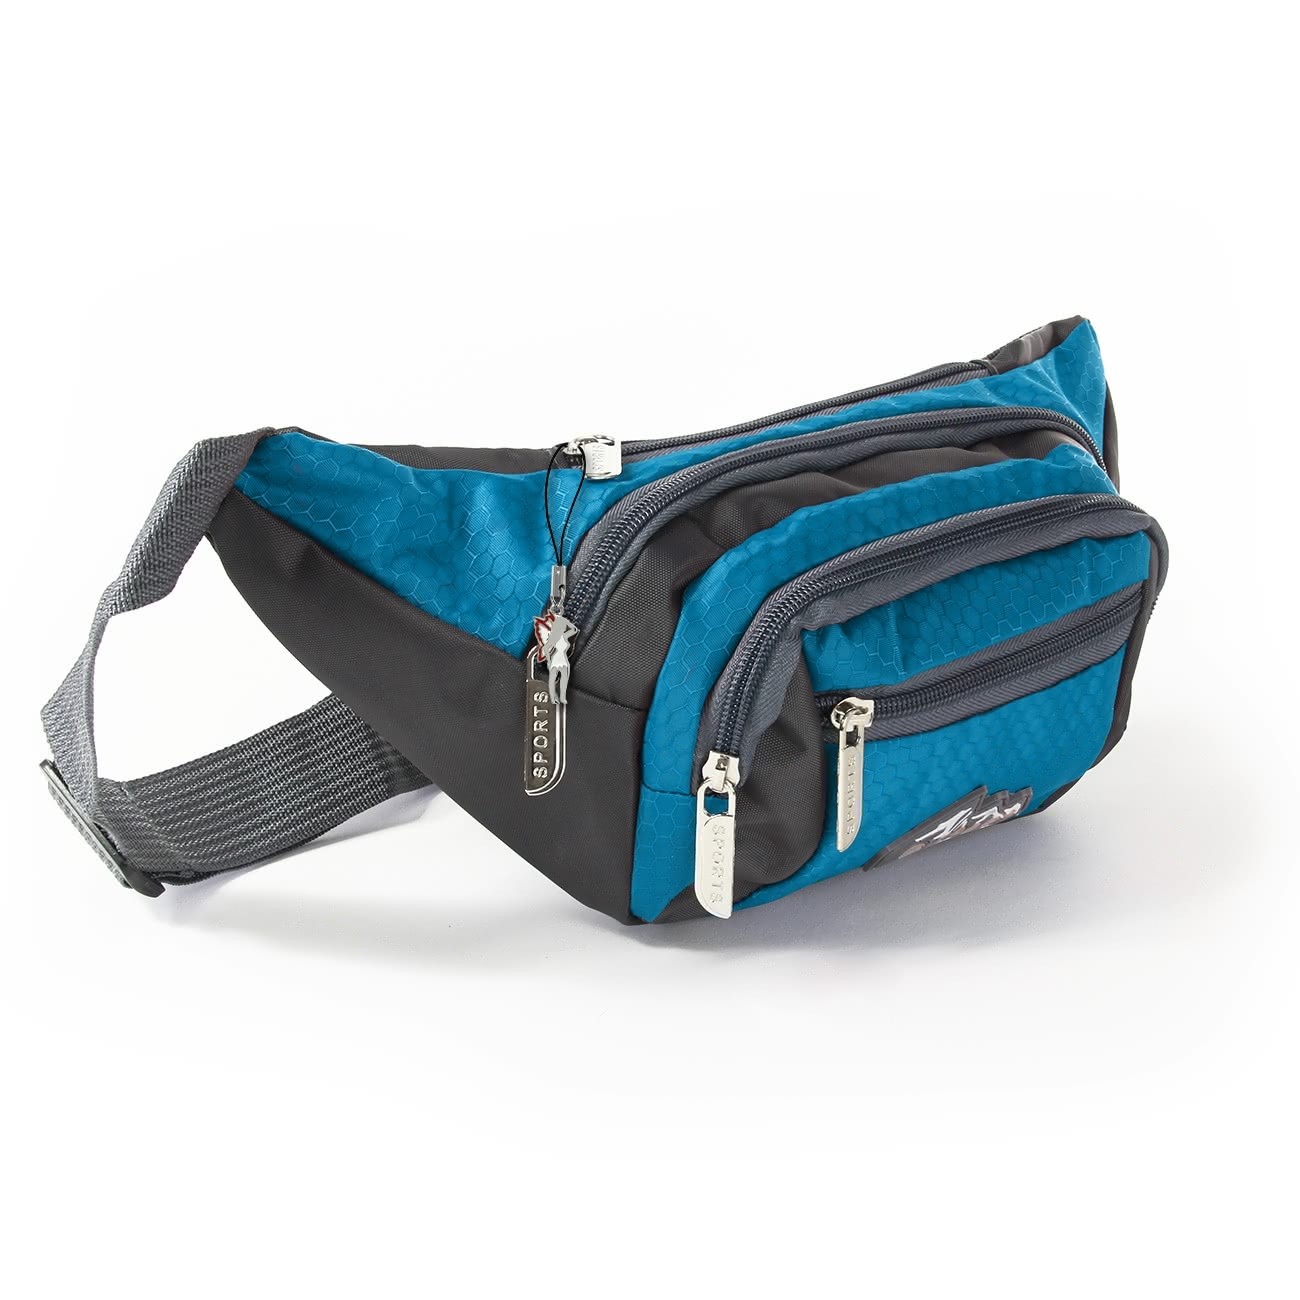 Bag Street sportliche Gürteltasche Nylon blau Bauchtasche Hüfttasche OTJ507B